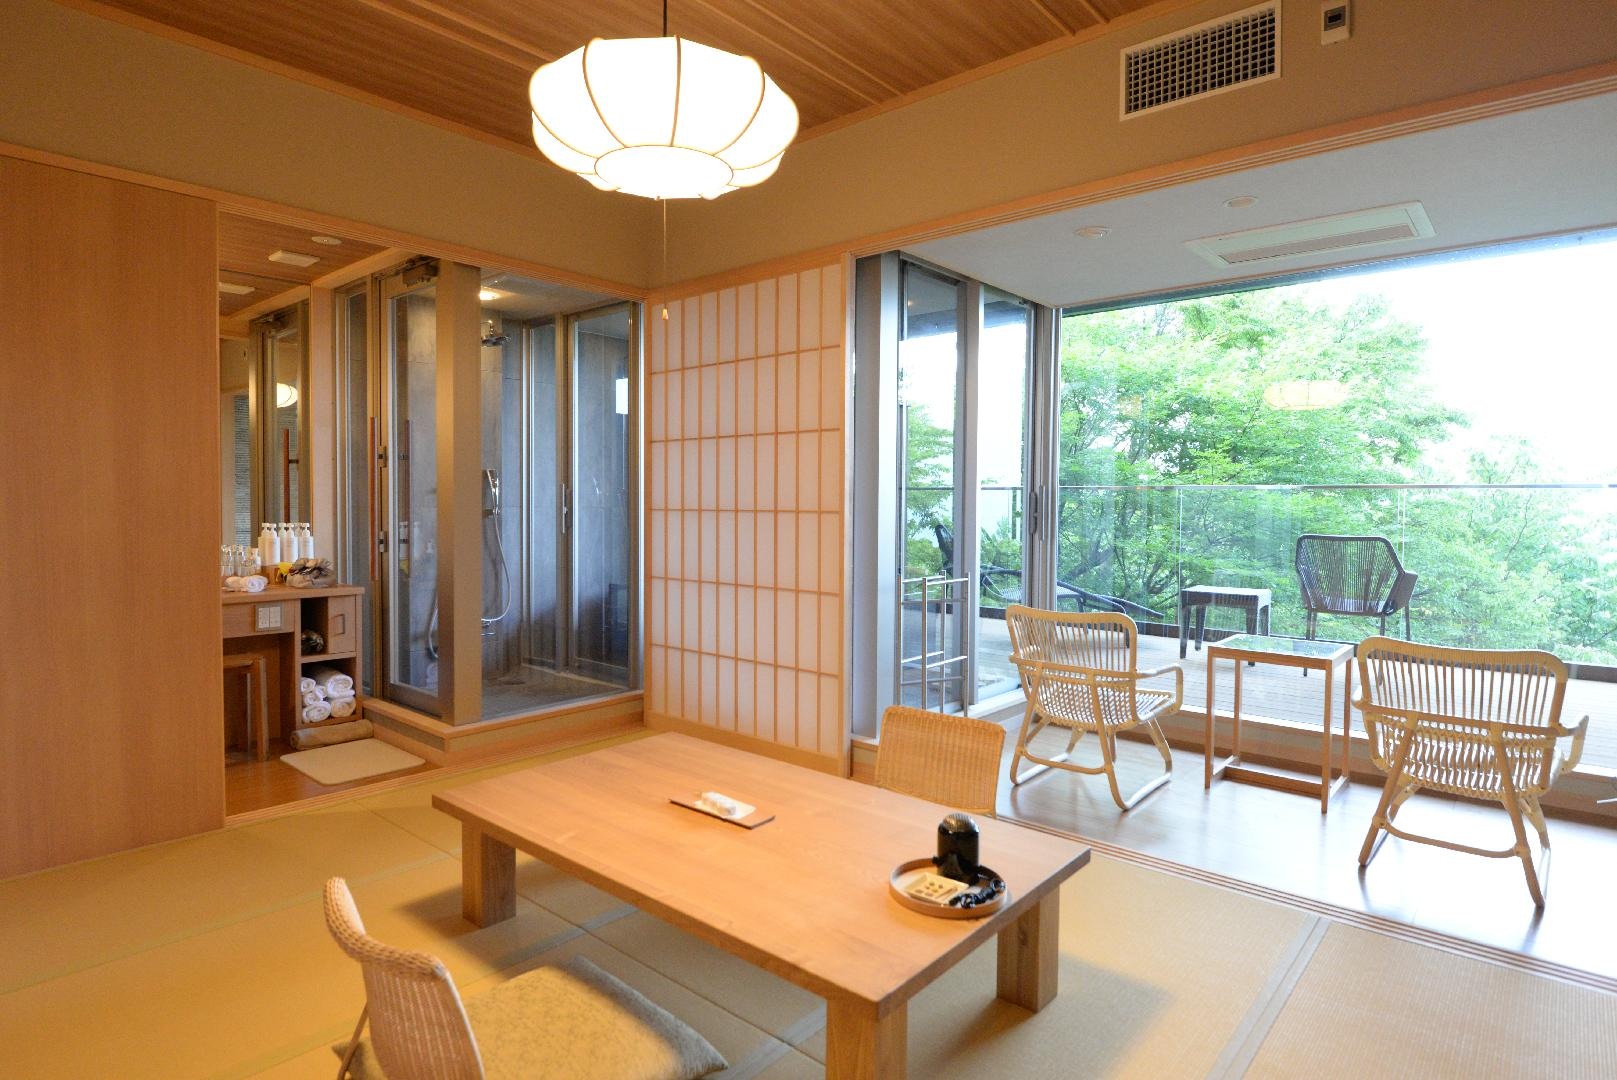 일본식 객실 10 다다미 넓은 인연 + 자연원 전망 덱